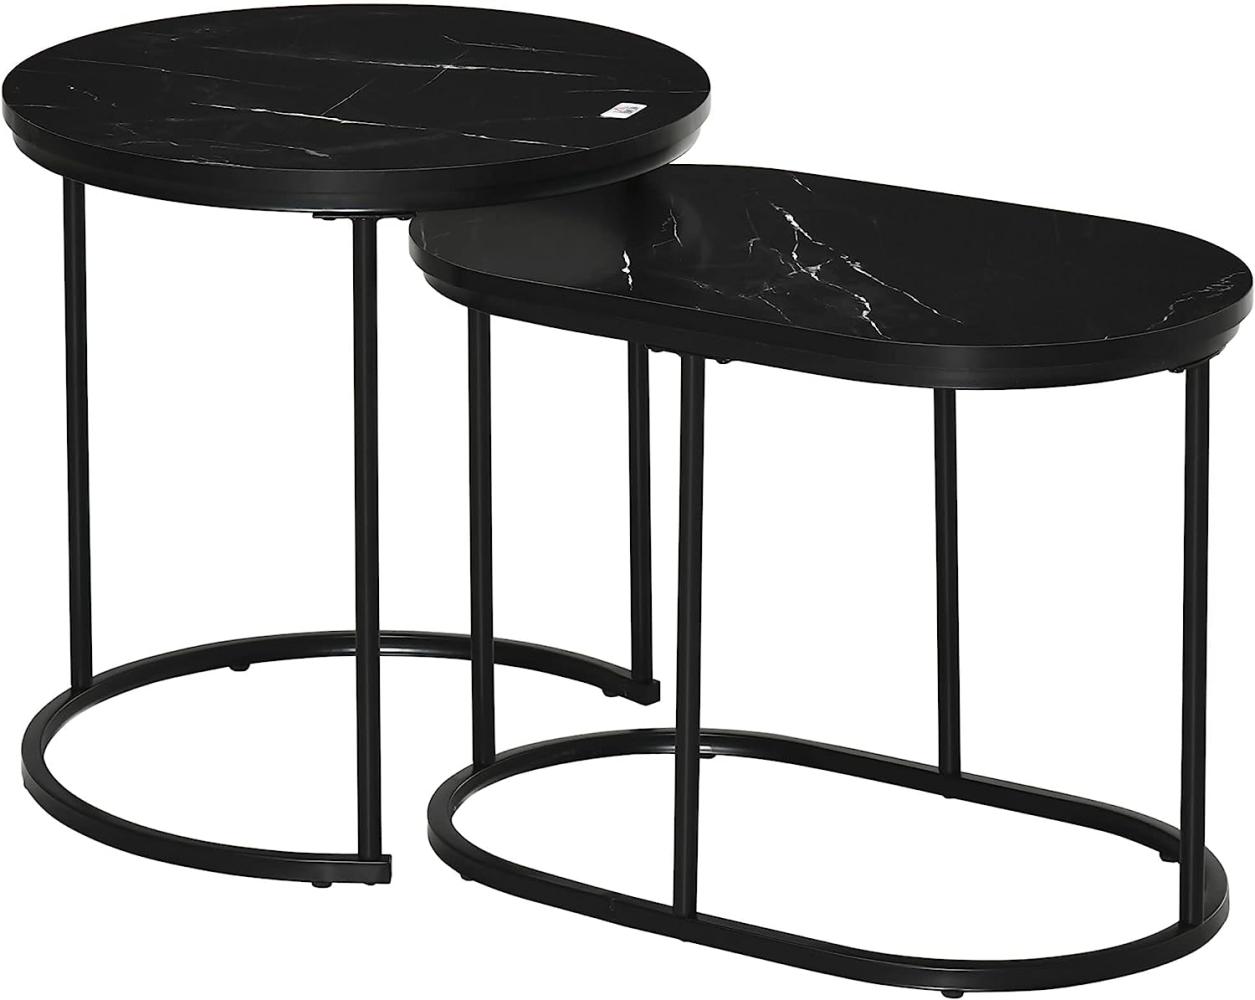 HOMCOM 2er Set Couchtisch Satztisch Rund Oval Beistelltisch Kaffeetisch Stapelbar für Wohnzimmer mit Faux Marmor Seite bis 30 kg MDF Stahl Schwarz Ø50 x 50,5H cm Bild 1